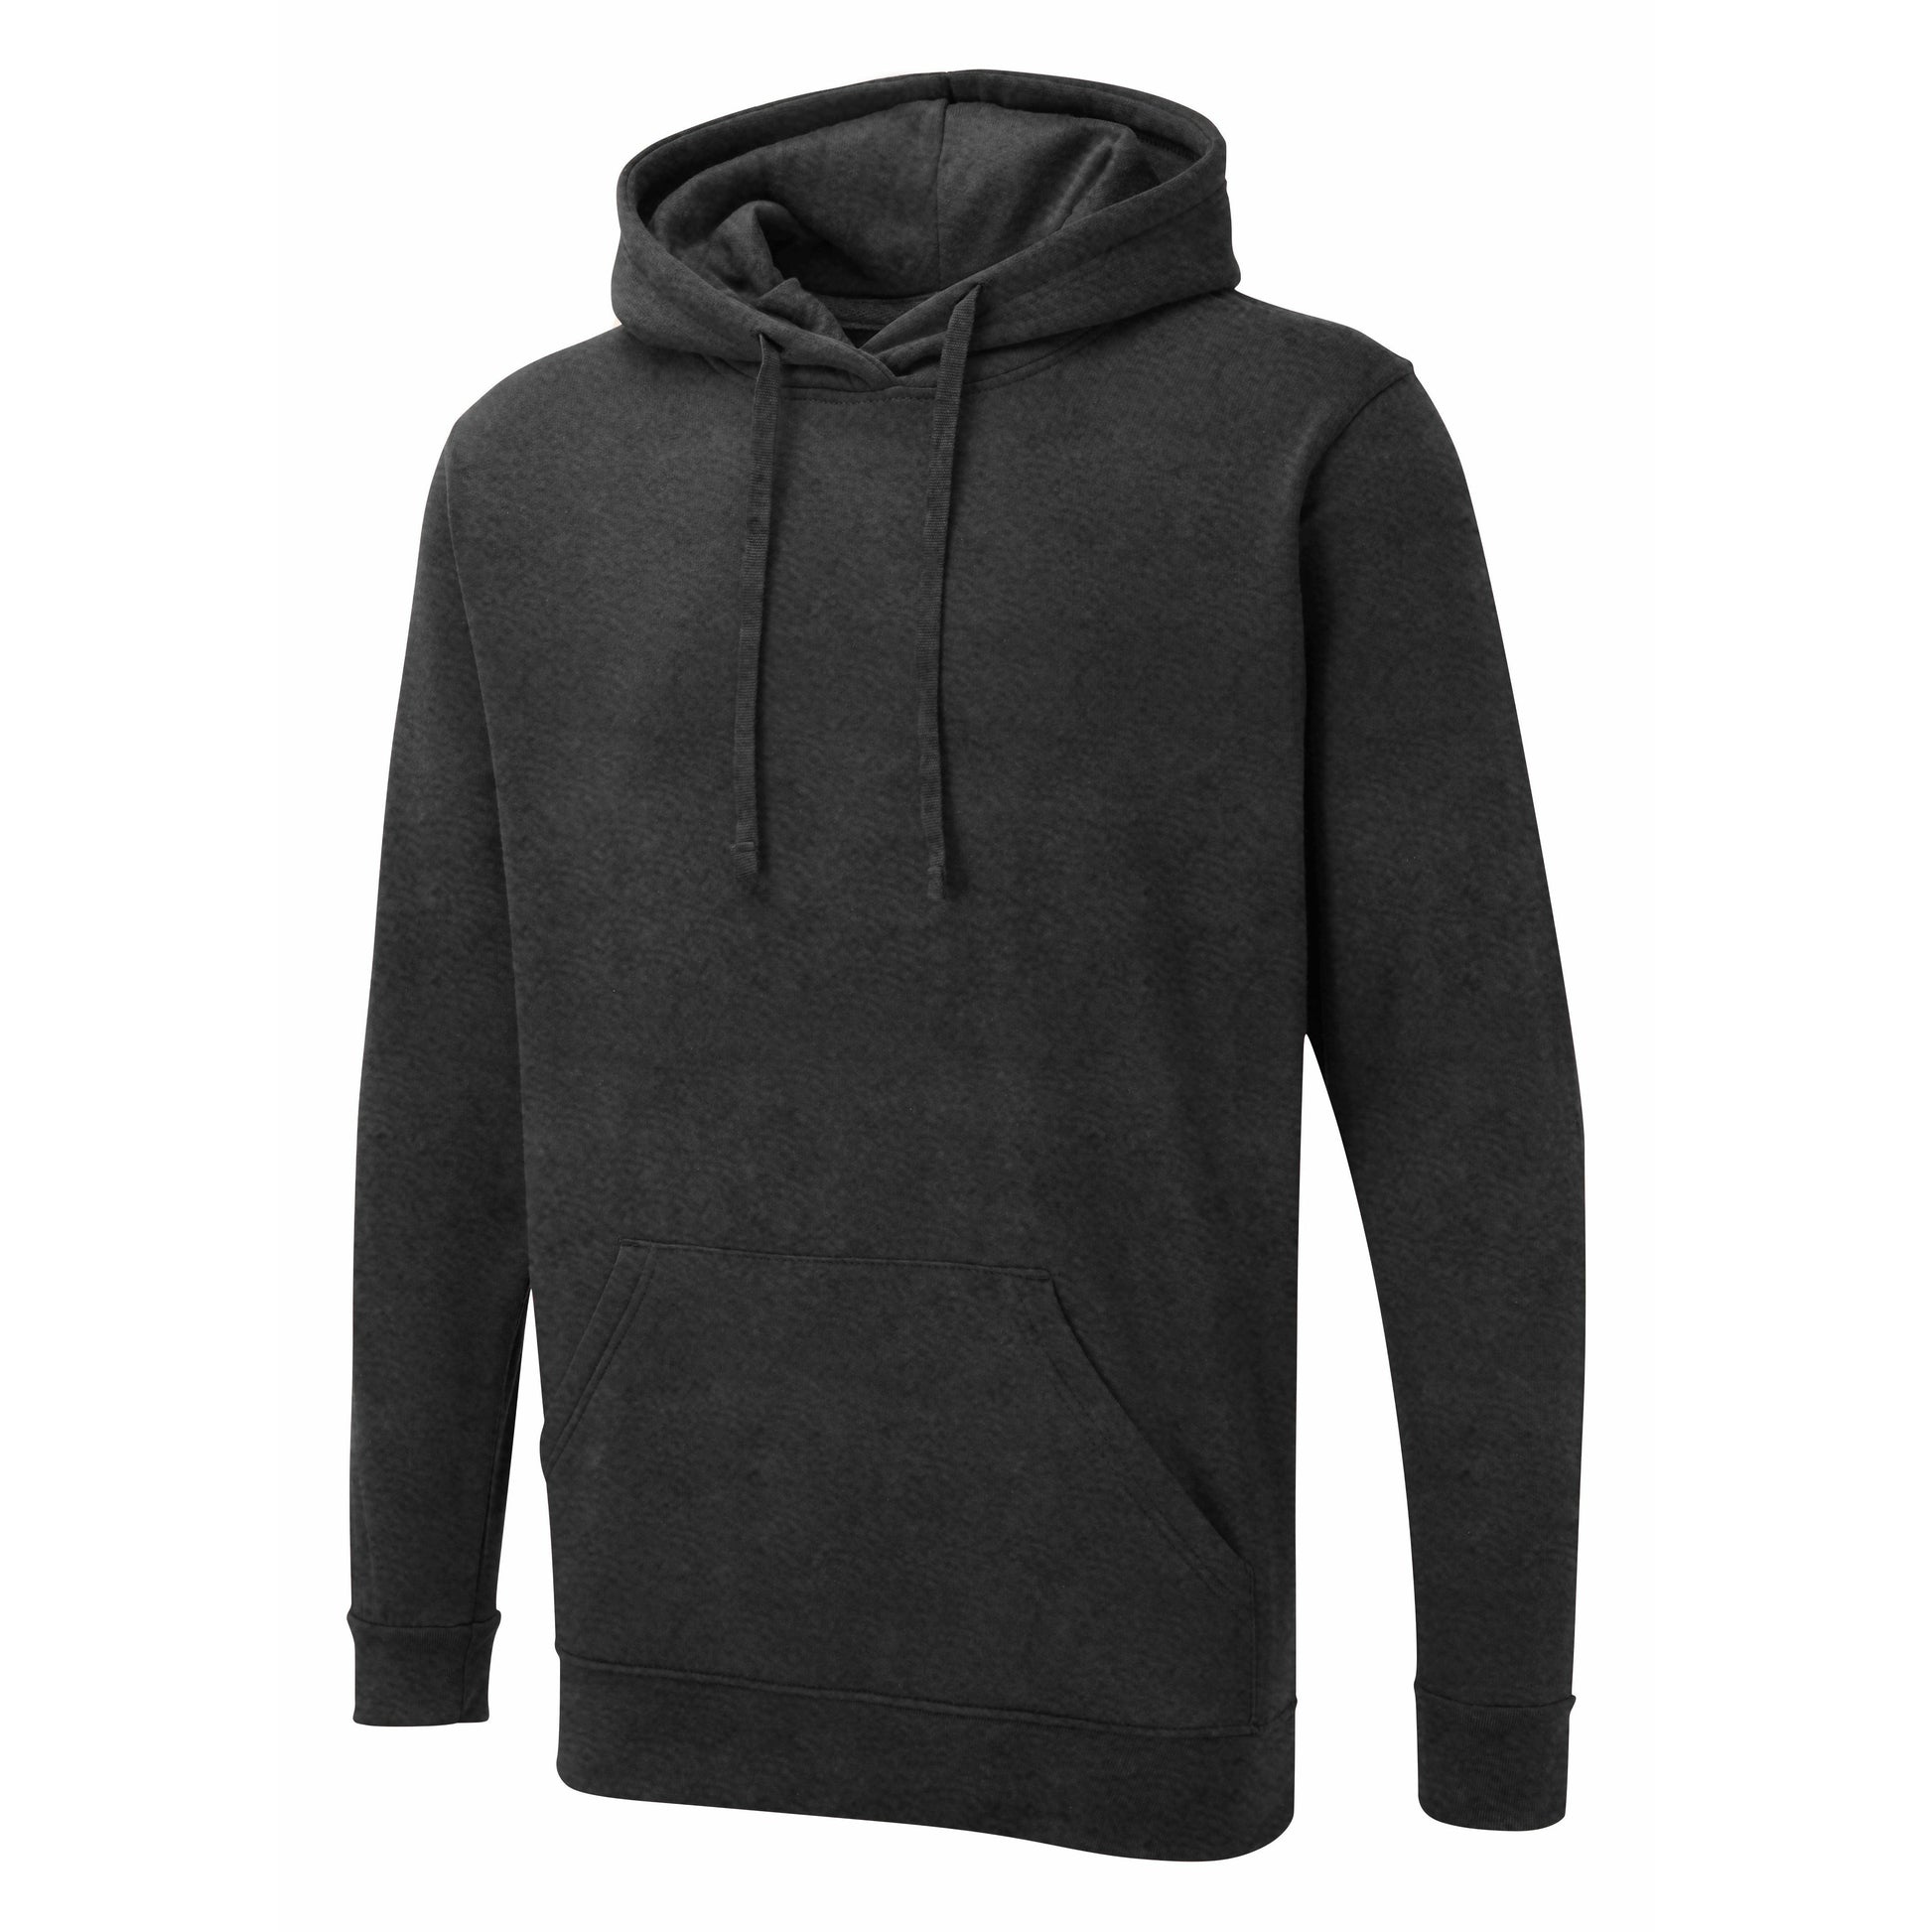 Charcoal grey UX hoodie